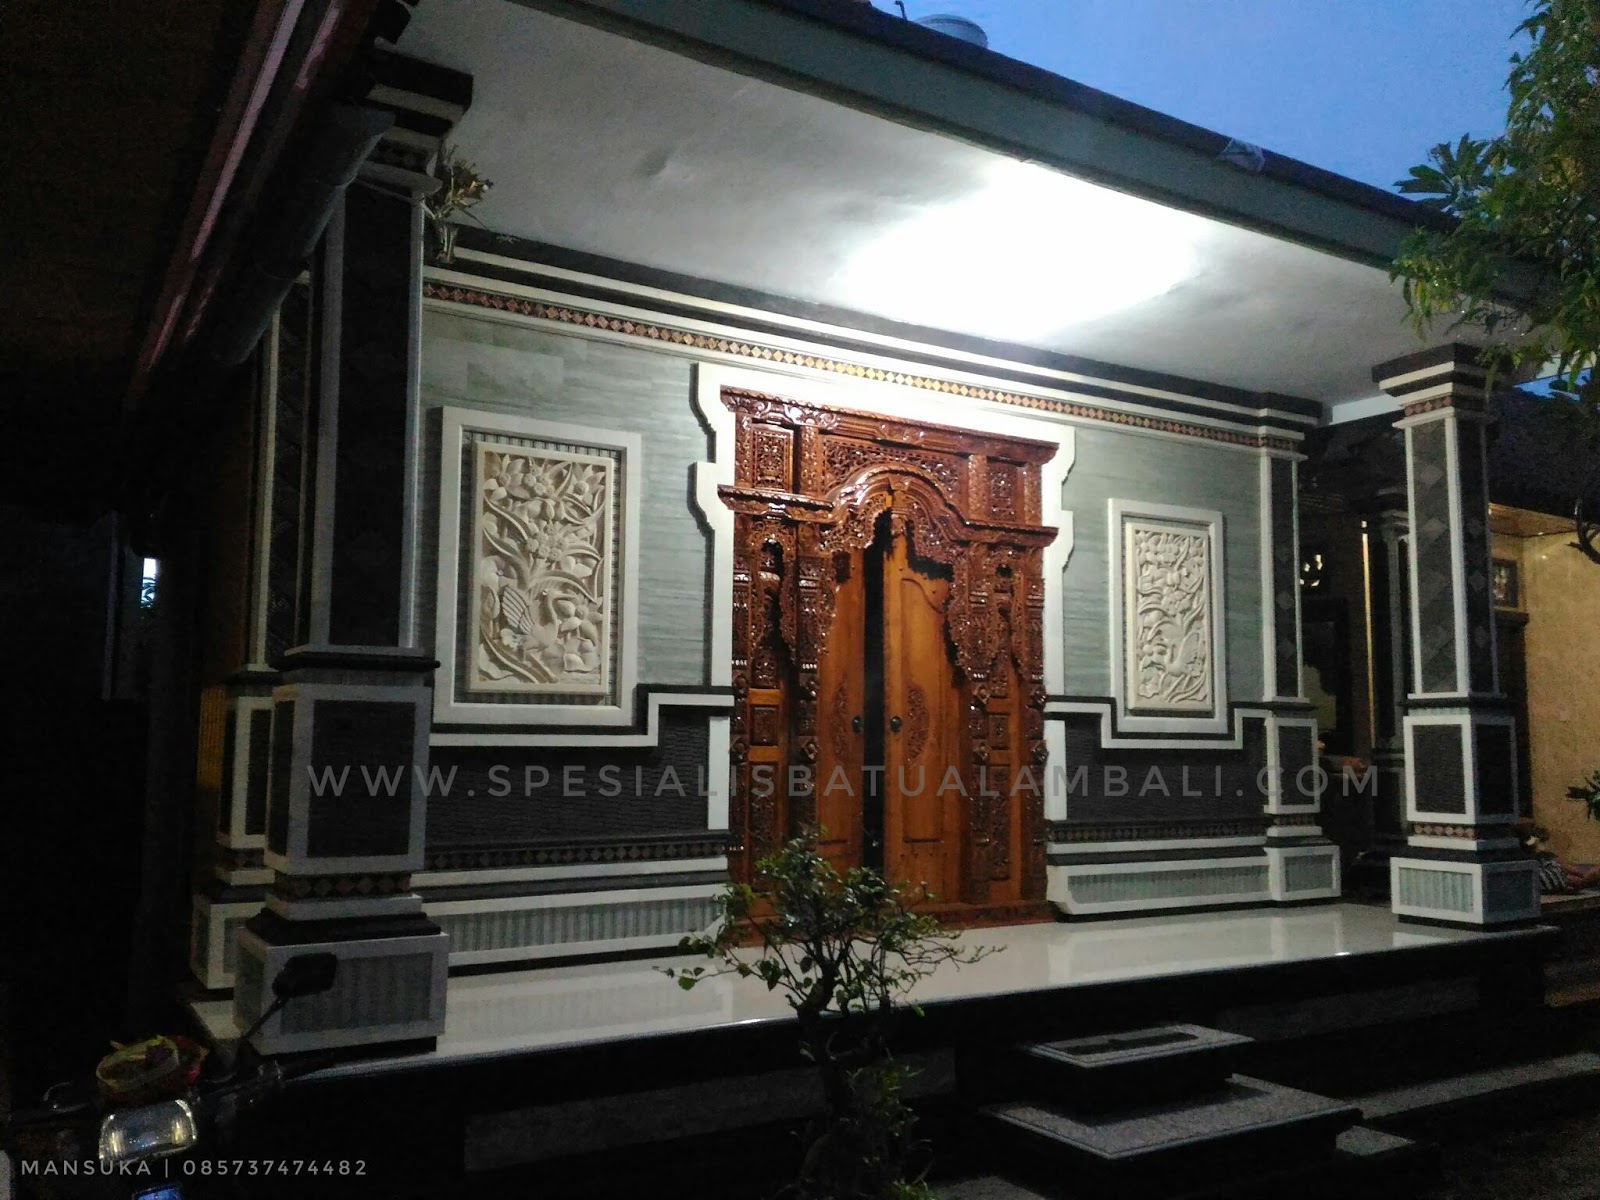 Ornamen Batu Siolit Untuk Rumah Minimalis Spesialis Batu Alam Bali